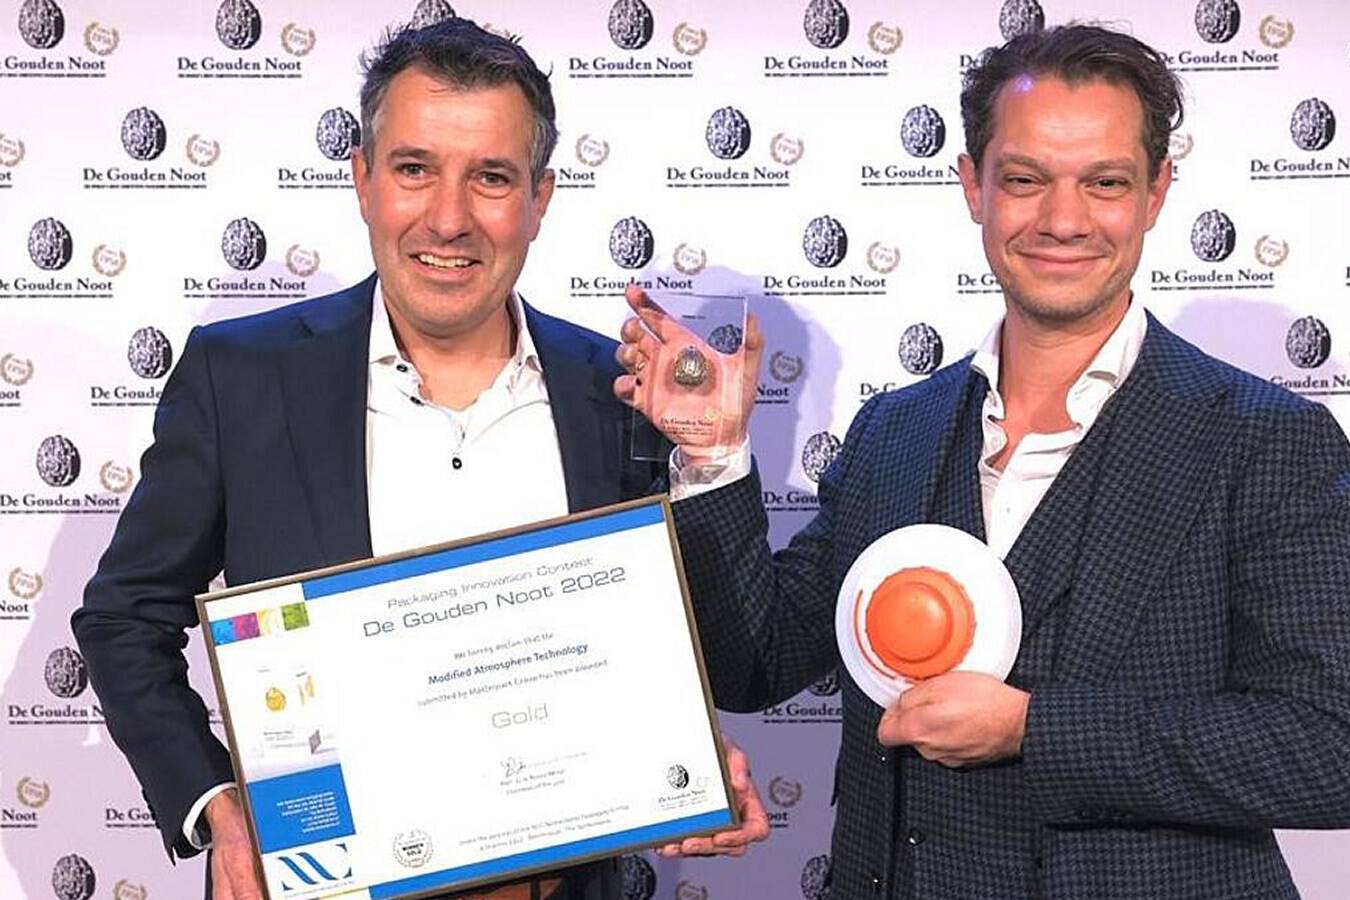 Masterpack Group gewinnt den Verpackungsinnovationspreis Masterpack Group ist Gewinner von ”De Gouden Noot 2022”, dem weltweit kompetitivsten Wettbewerb für Verpackungsinnovationen.